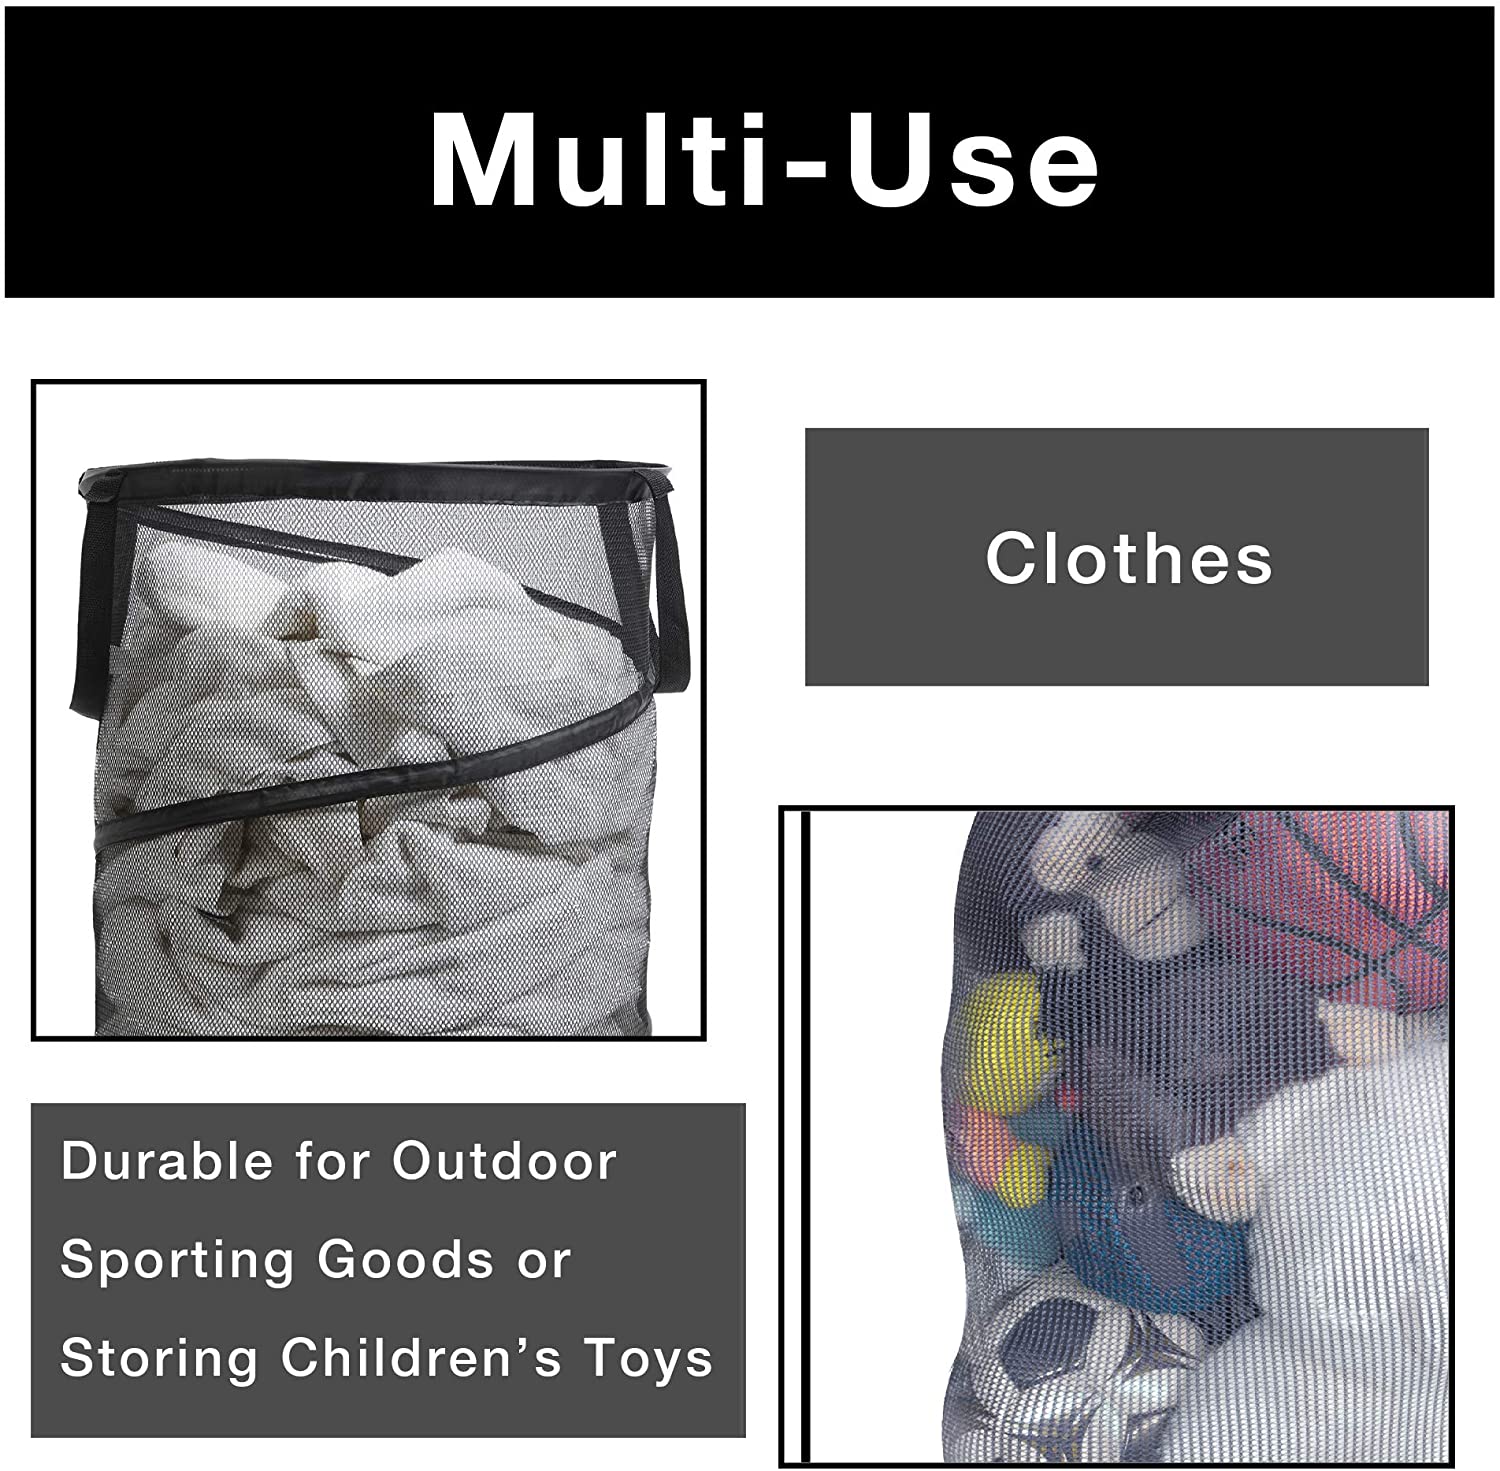 Smart Design Pop-Up Spiral Laundry Hamper Bag Mesh - Collapsible Design -  Dorm Room Essential - Kids Clothes Basket Organizer - Home Organization